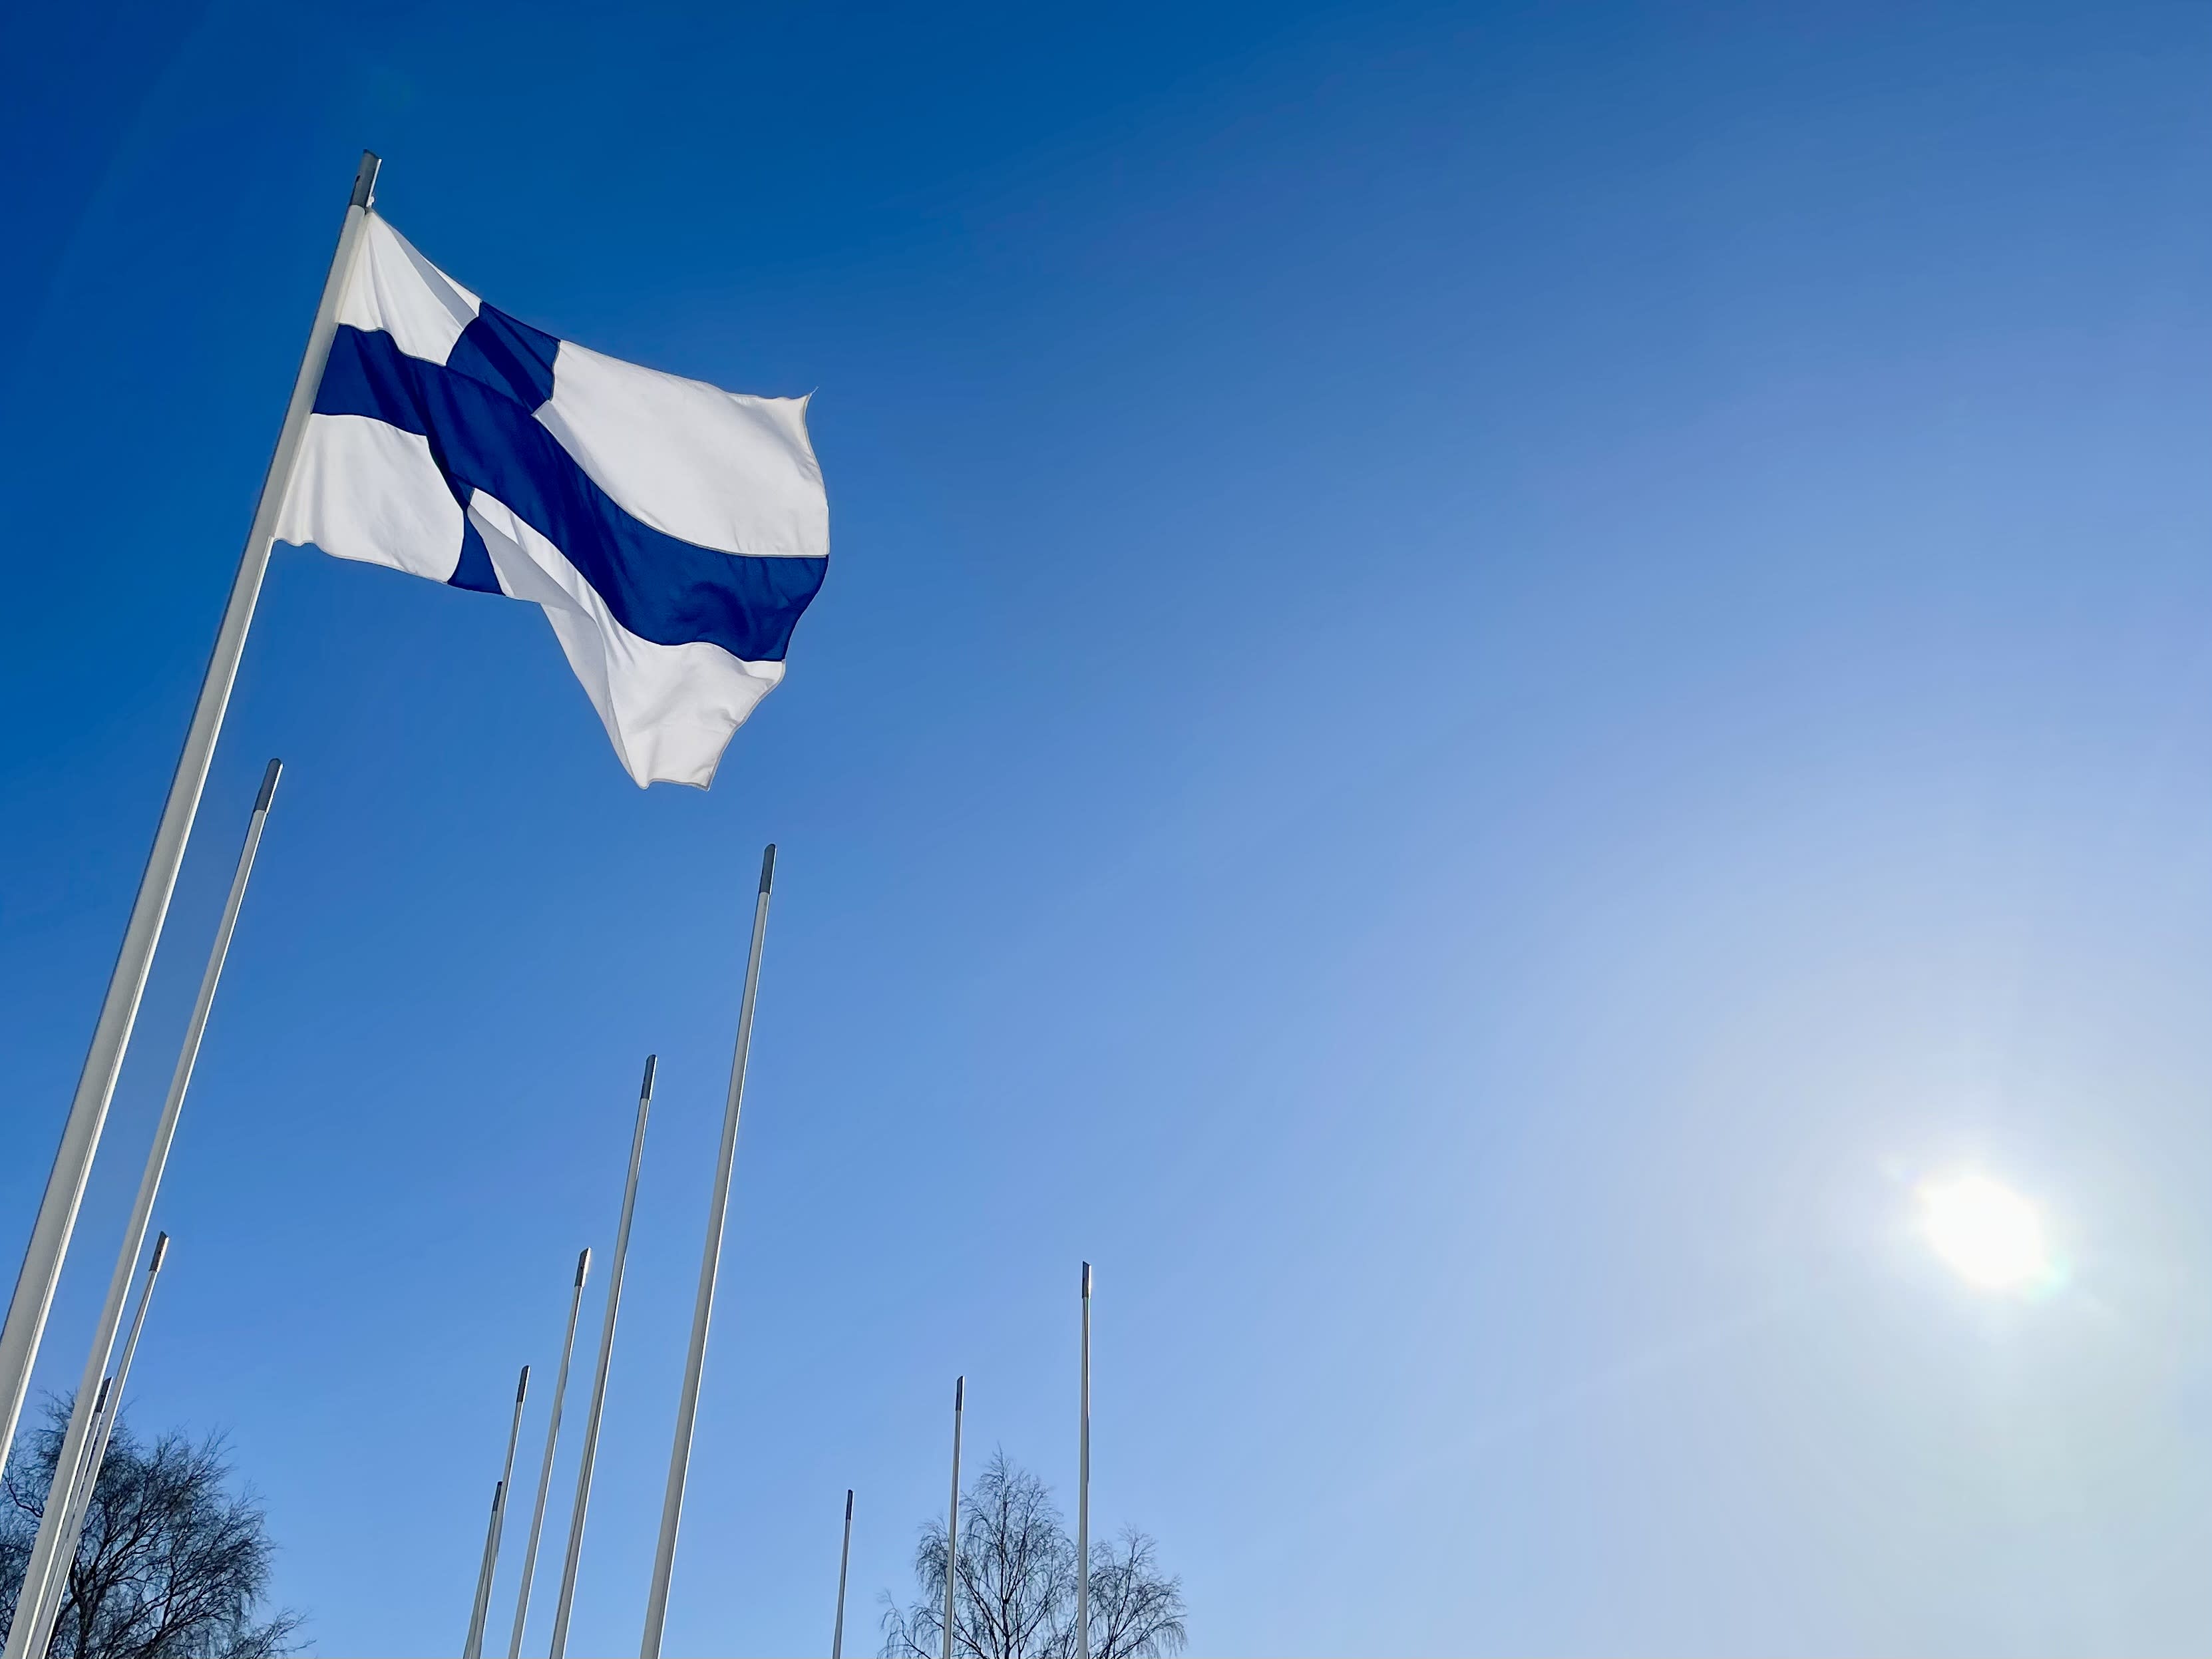 Finland celebrates UN Day